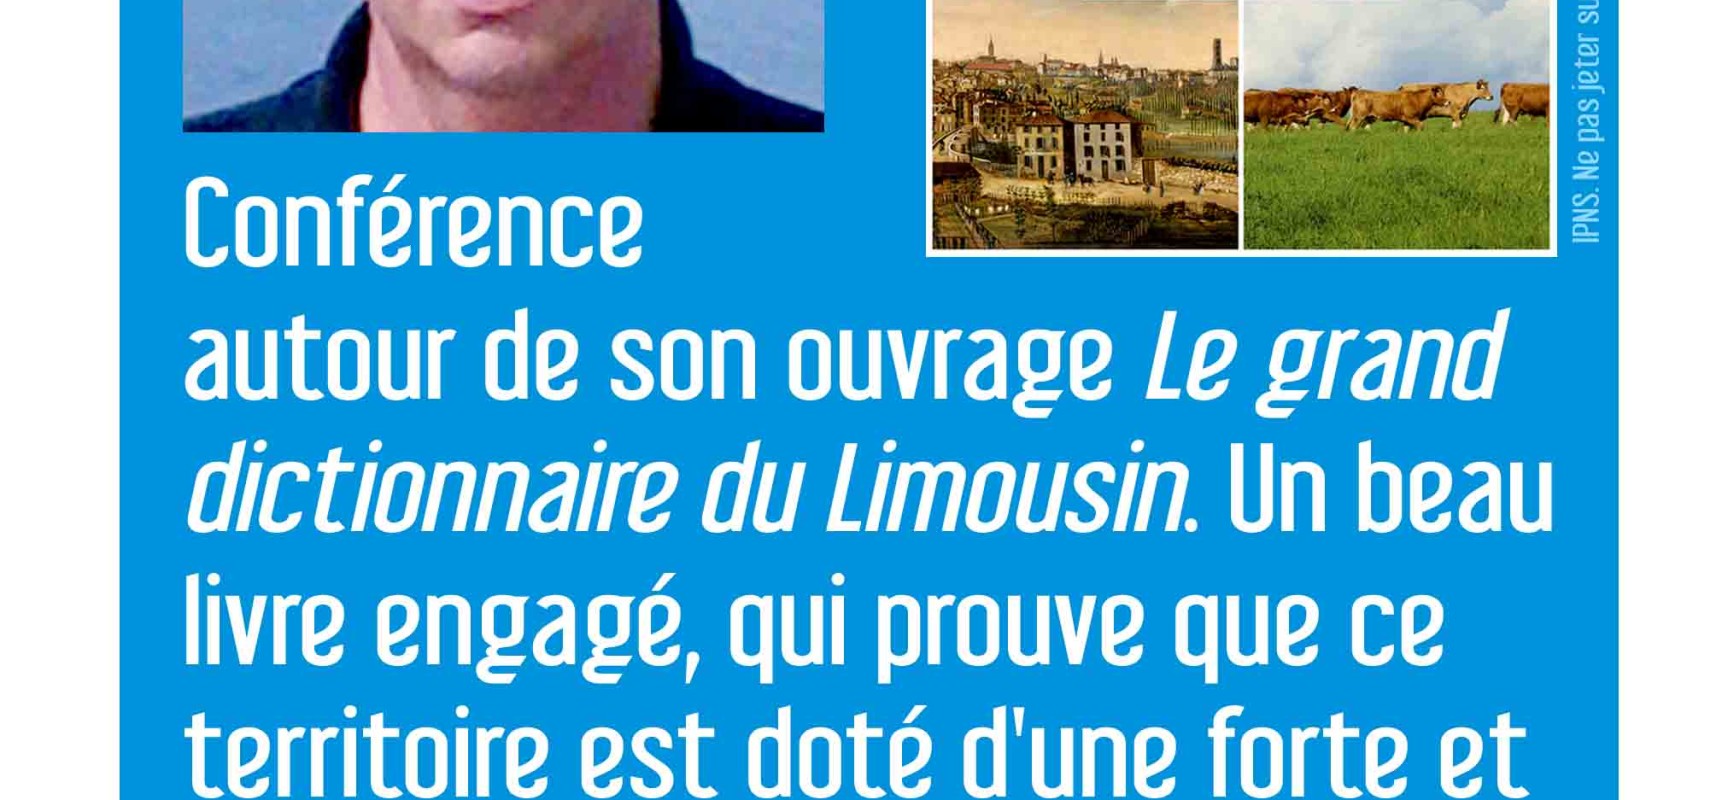 Conférence-dédicaces avec Laurent Bourdelas pour son livre « Le grand dictionnaire du Limousin » #Médiathèque #Felletin